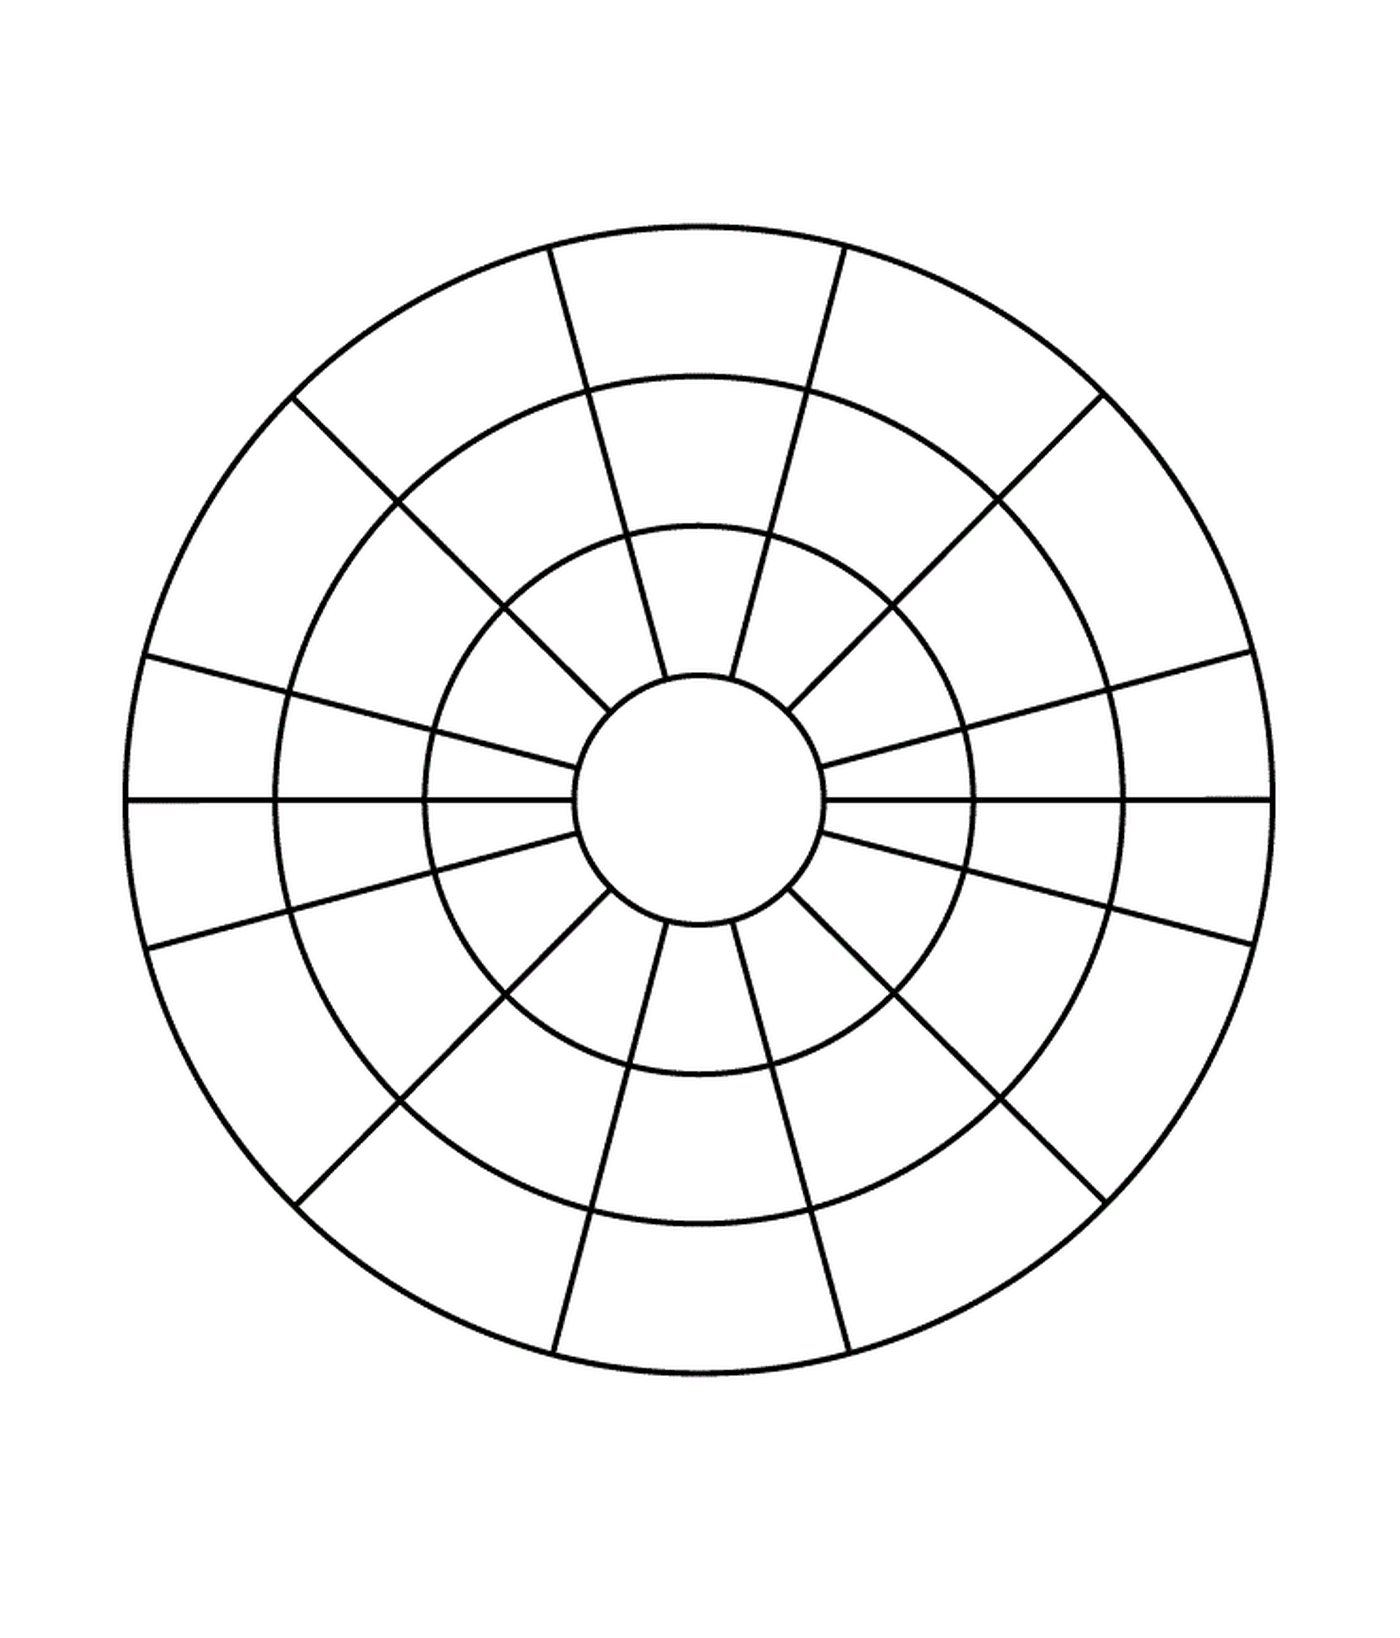   Un cercle divisé en quatre sections 